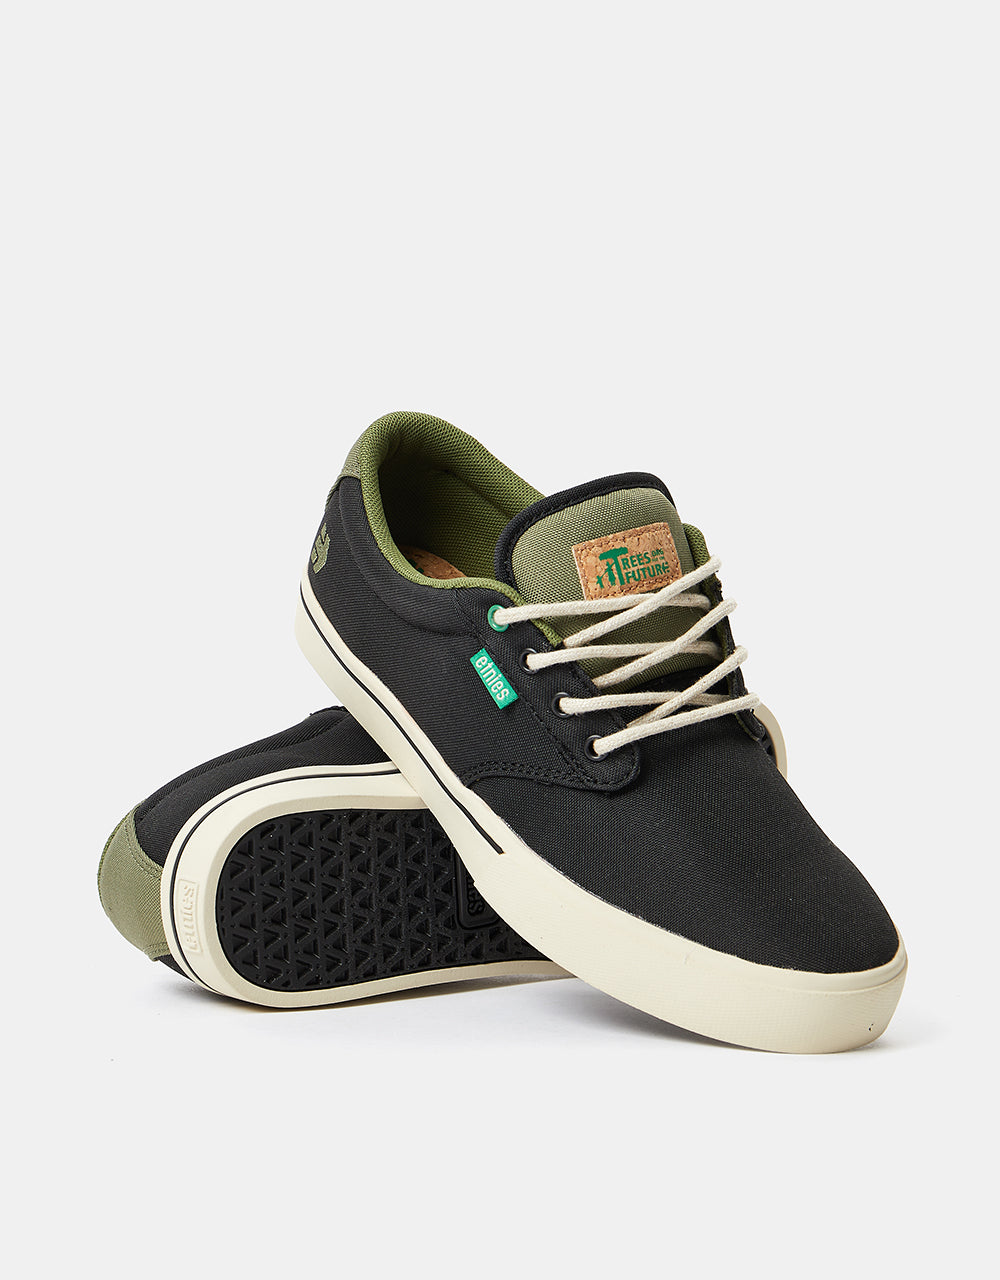 Etnies x TFTF Jameson 2 Eco Skate Shoes - Black/Olive